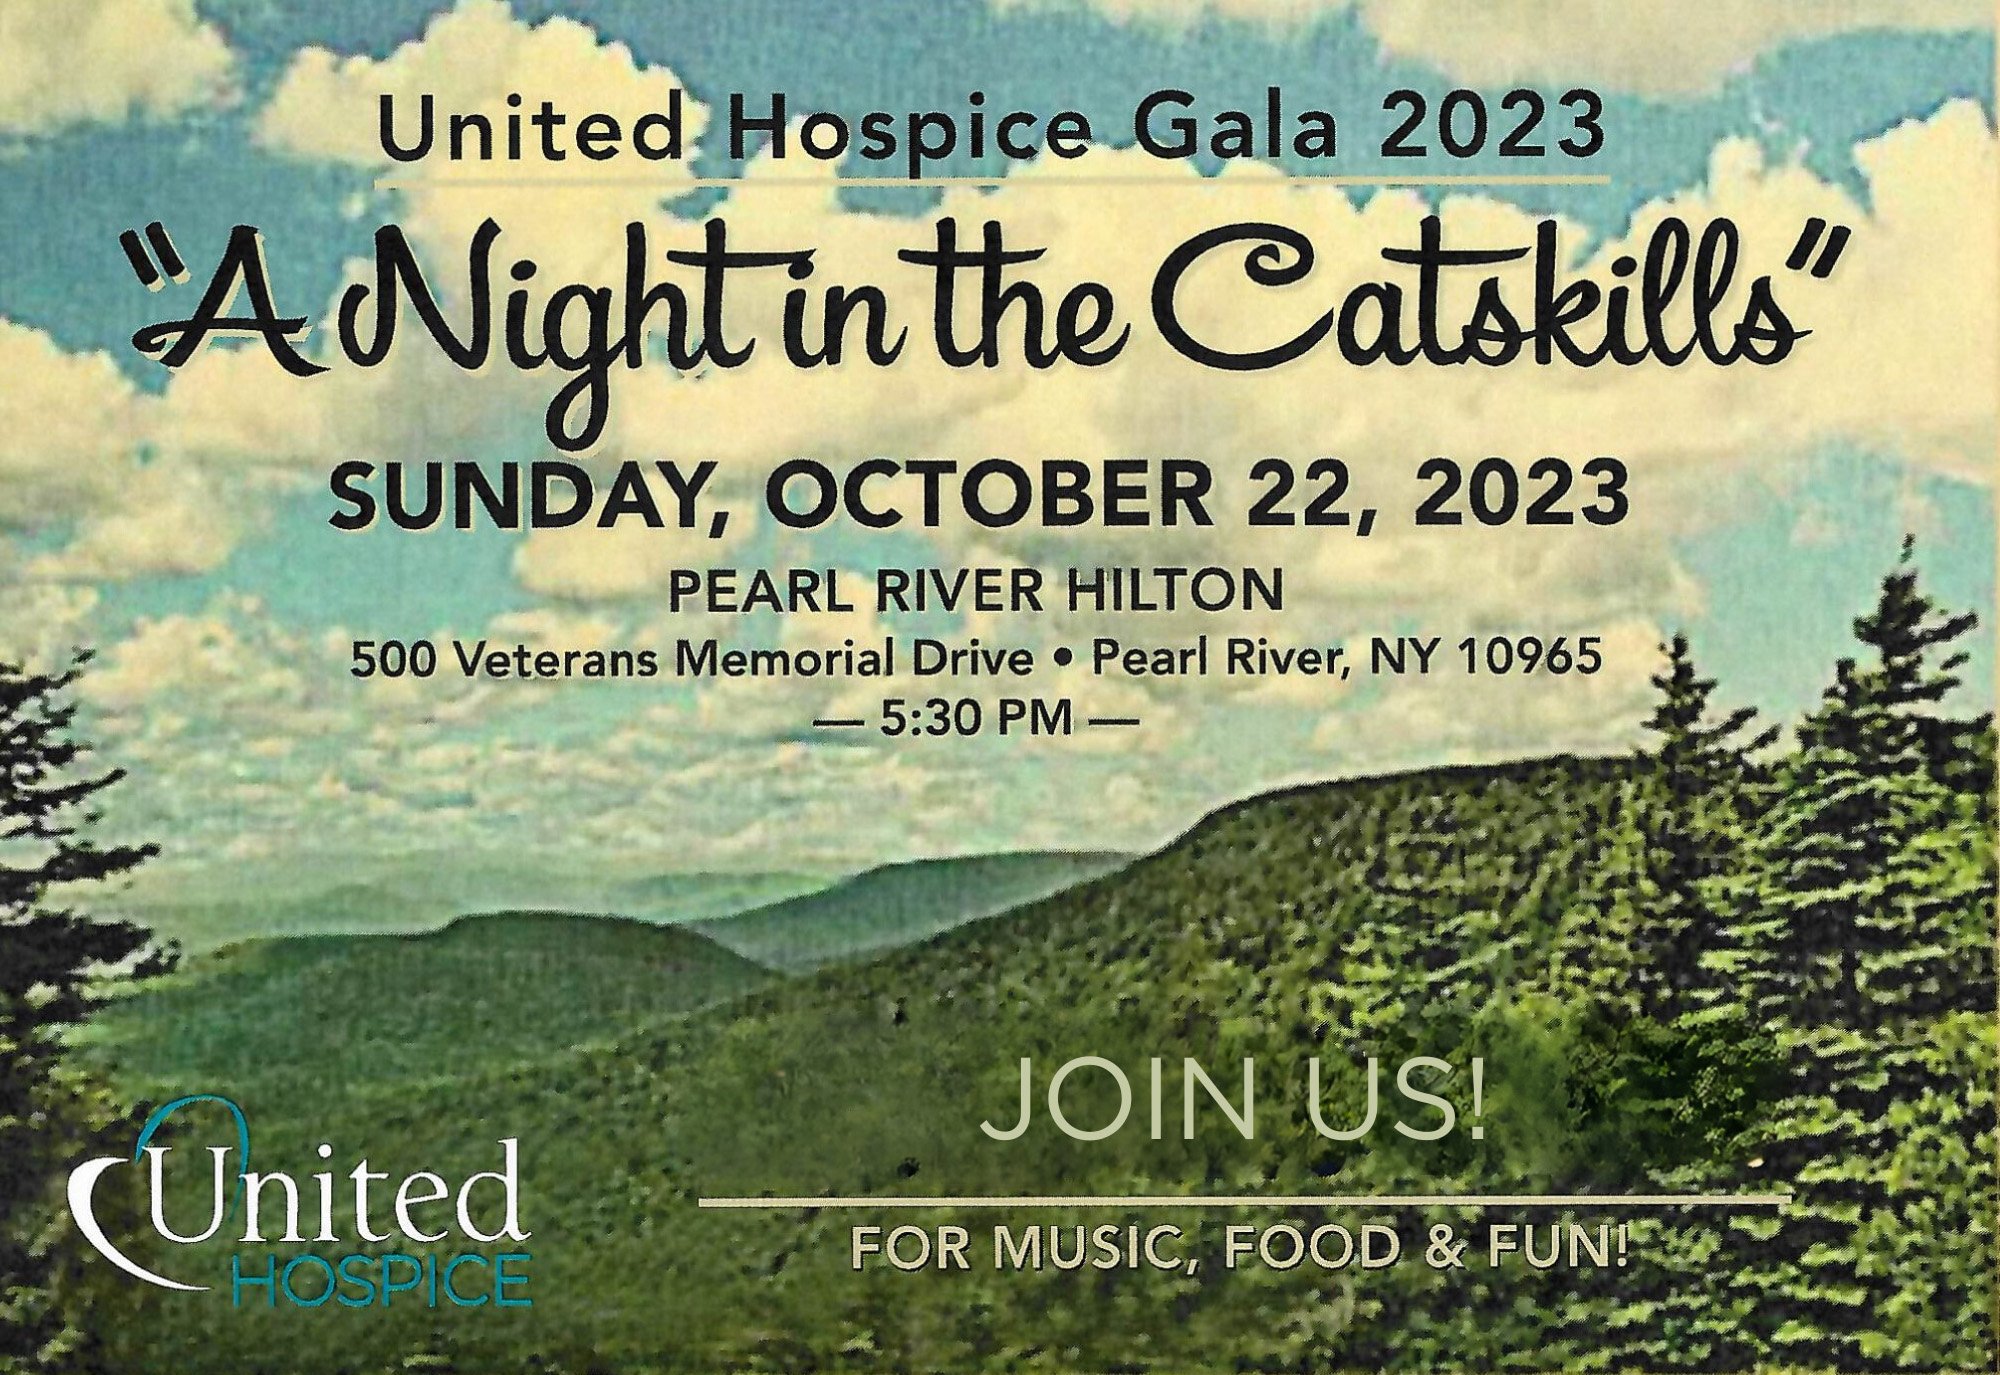 United Hospice Gala 2023